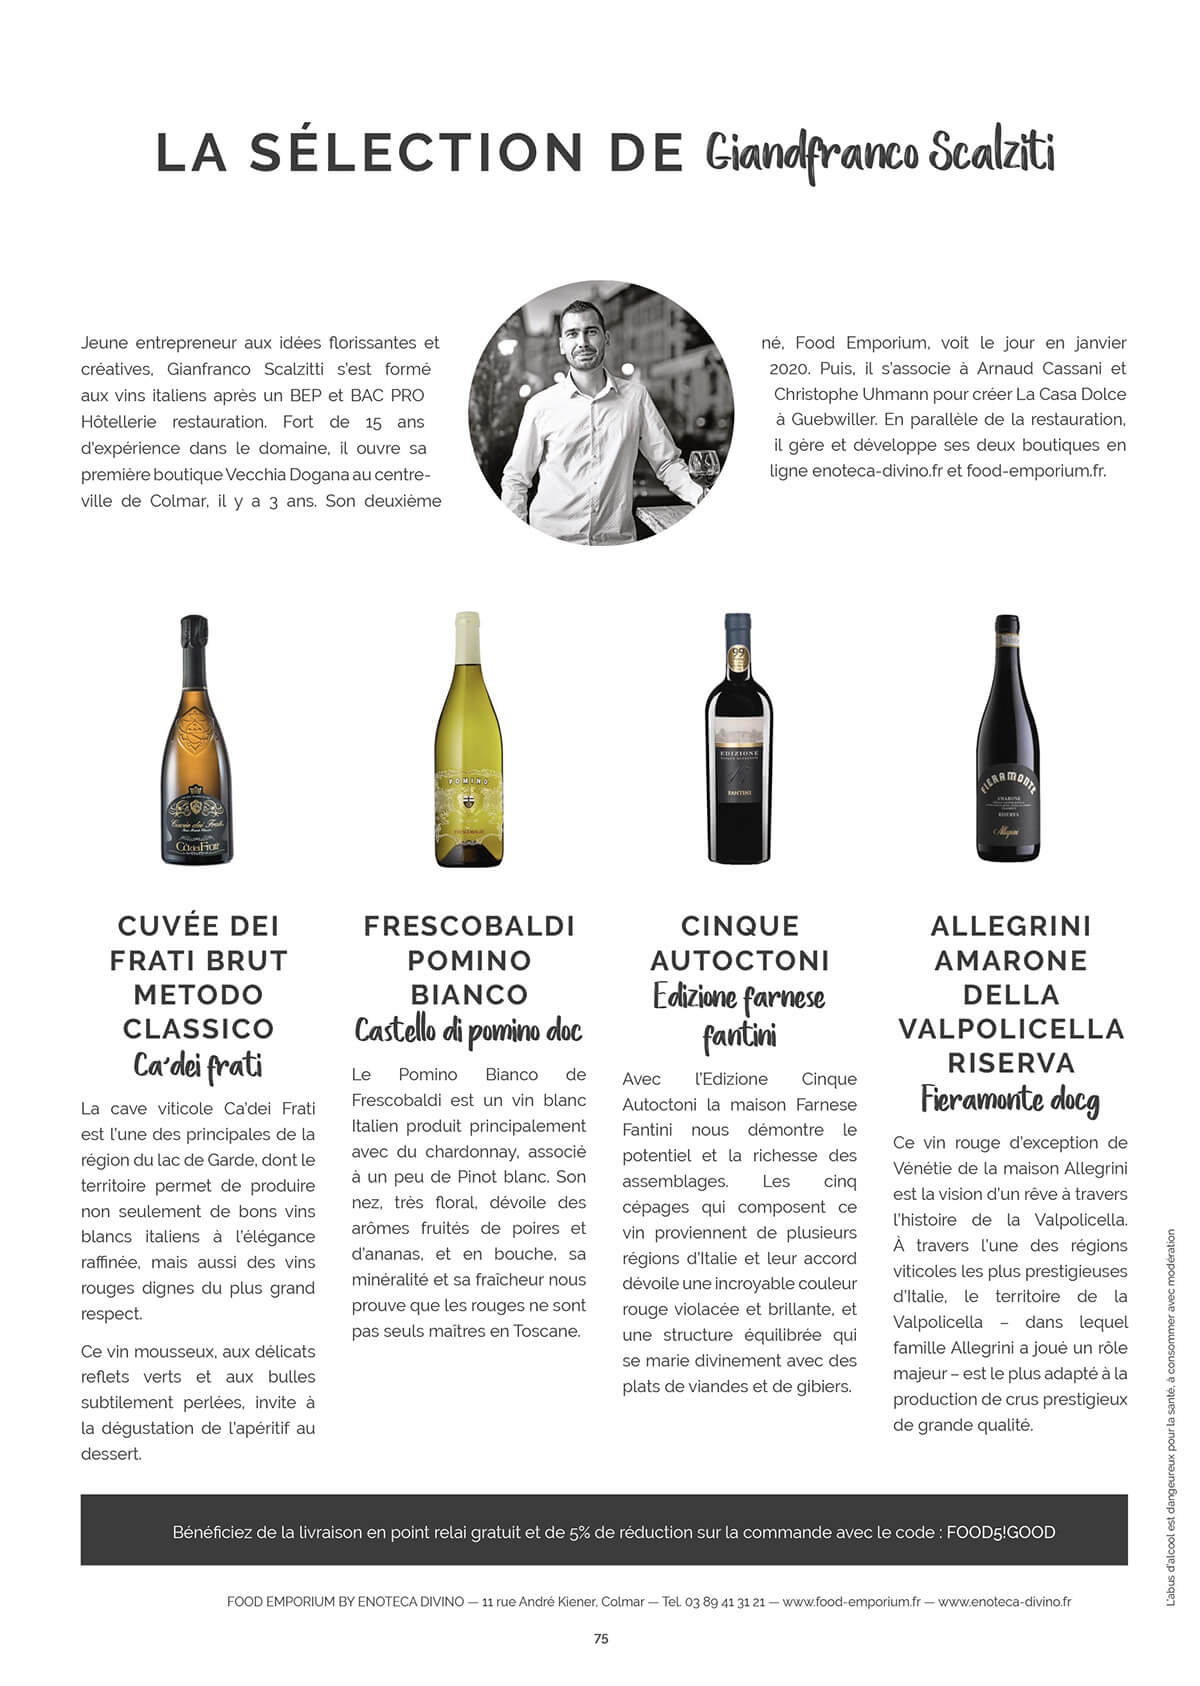 Sélection de vins par Giandfranco Scalziti, Tendance Food&Good Alsace